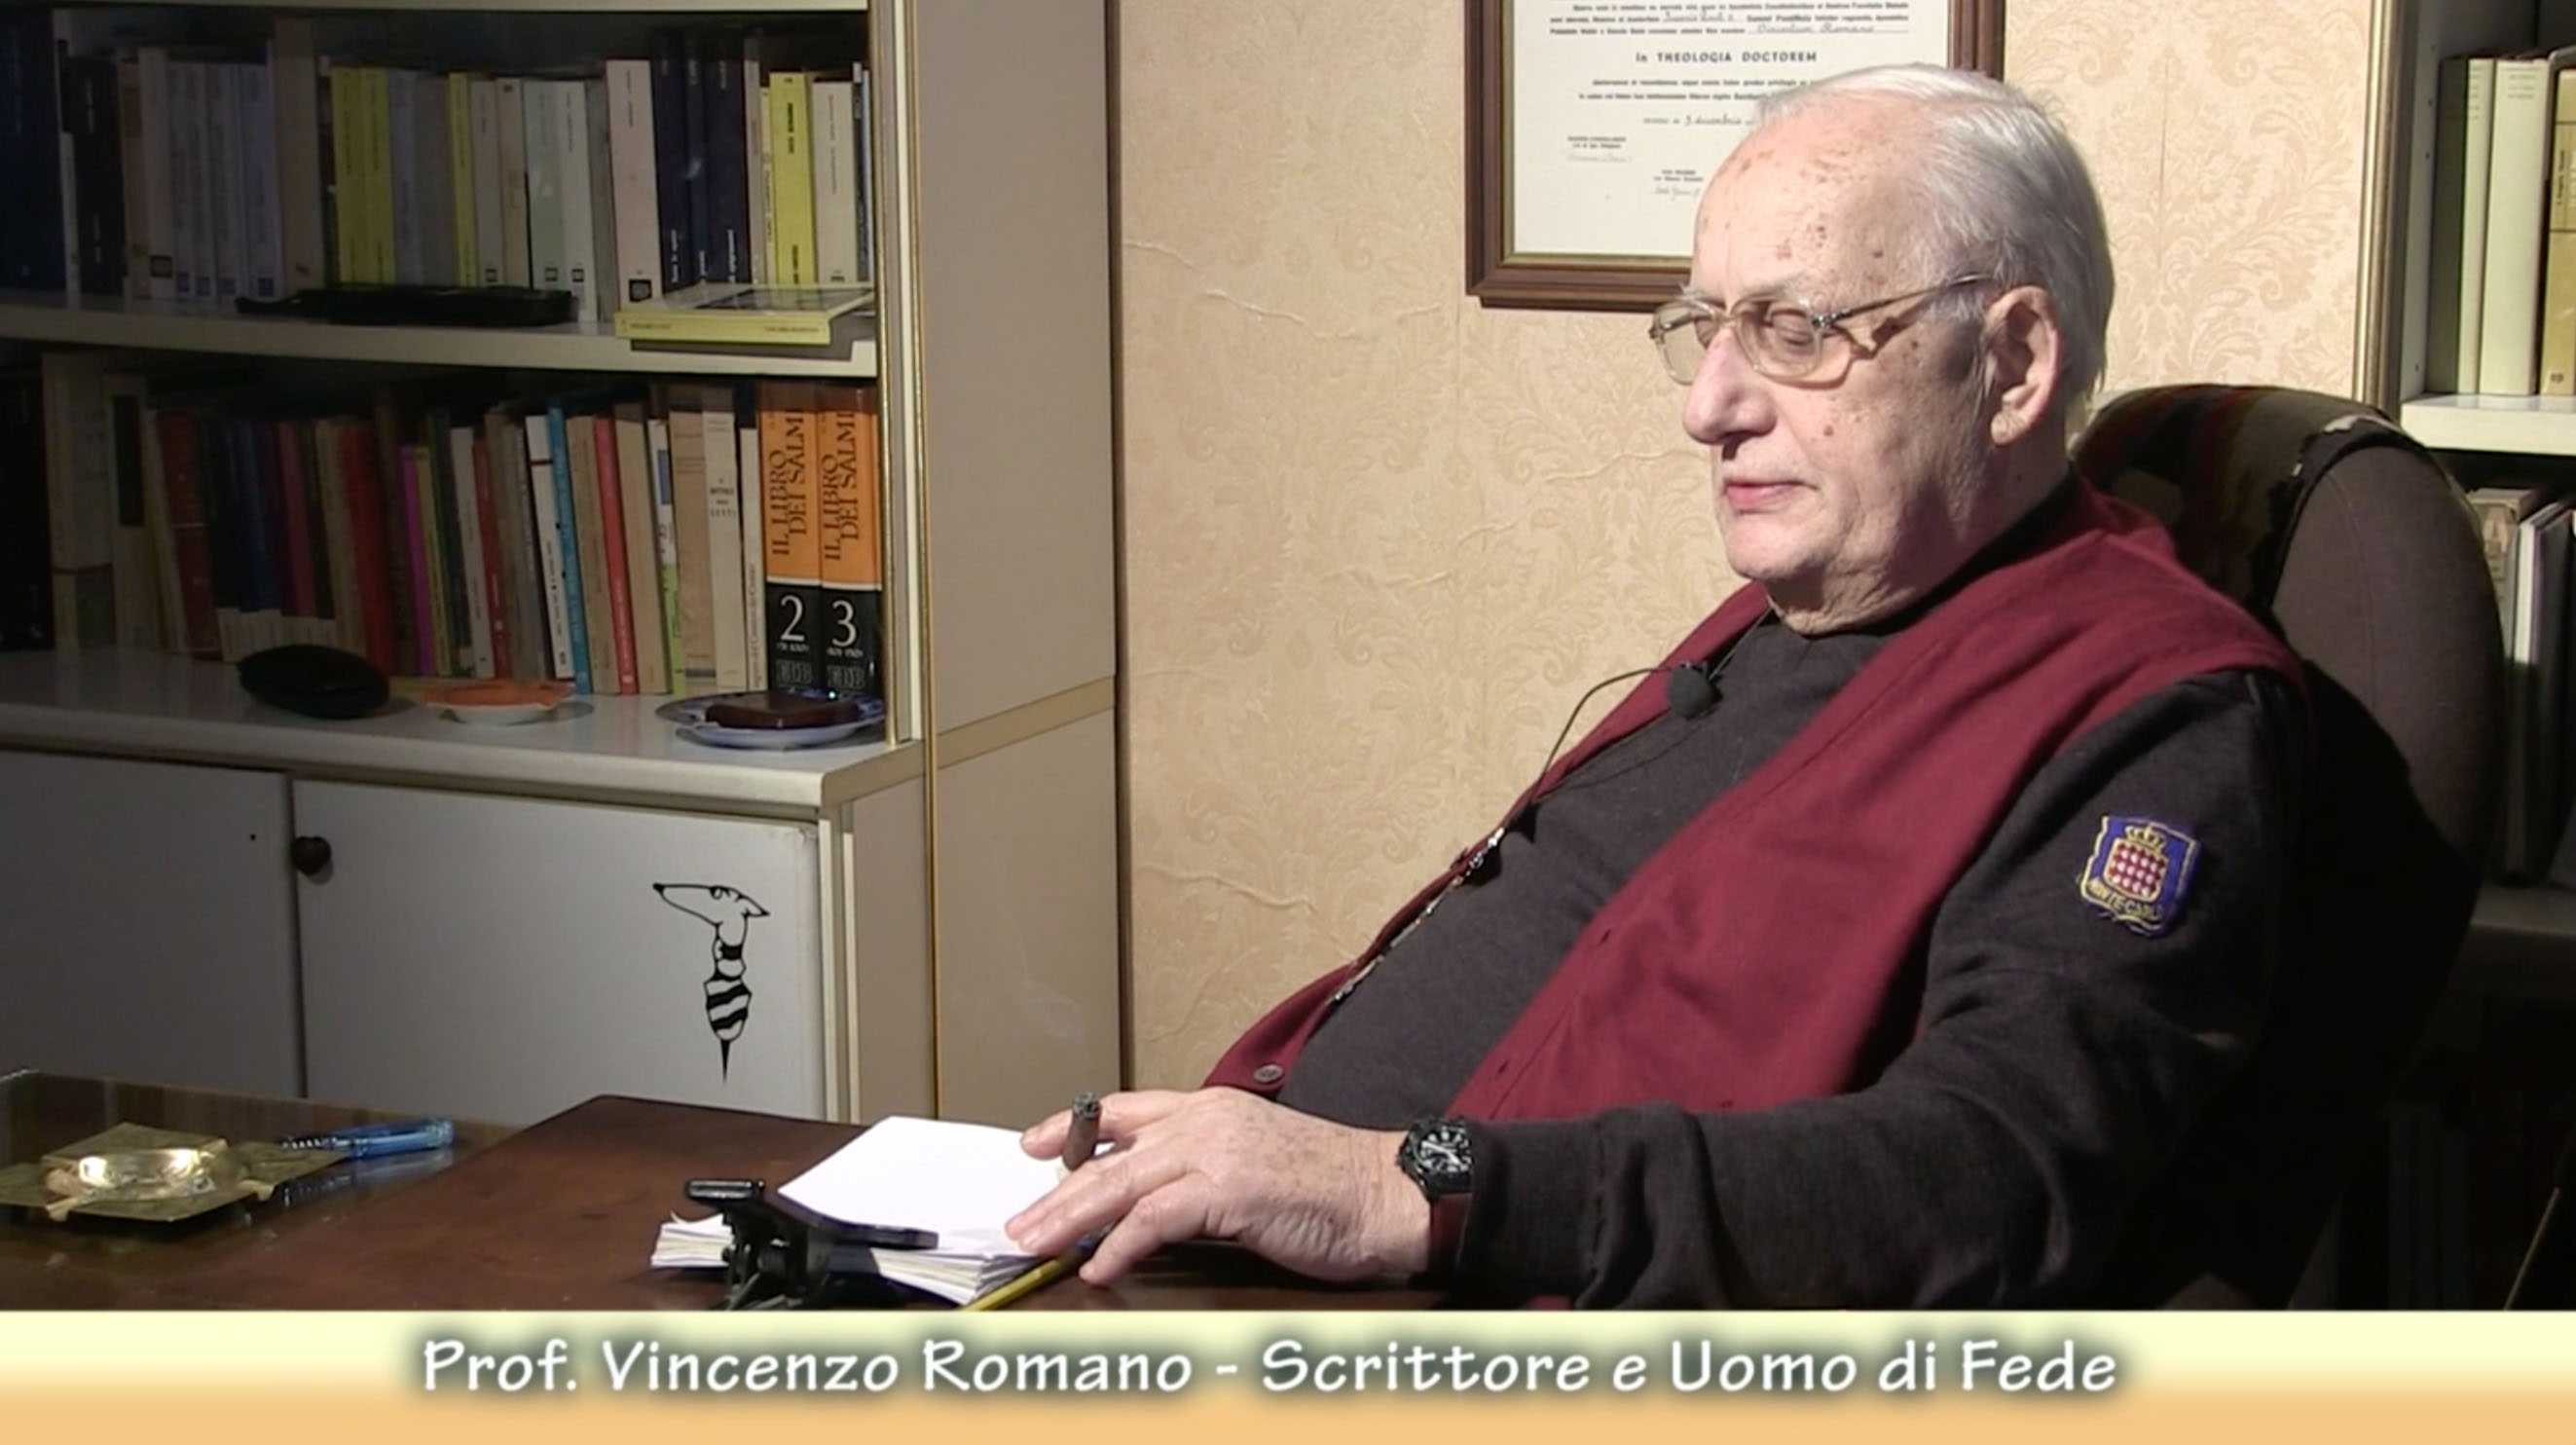 Vincenzo Romano – Scrittore e uomo di fede